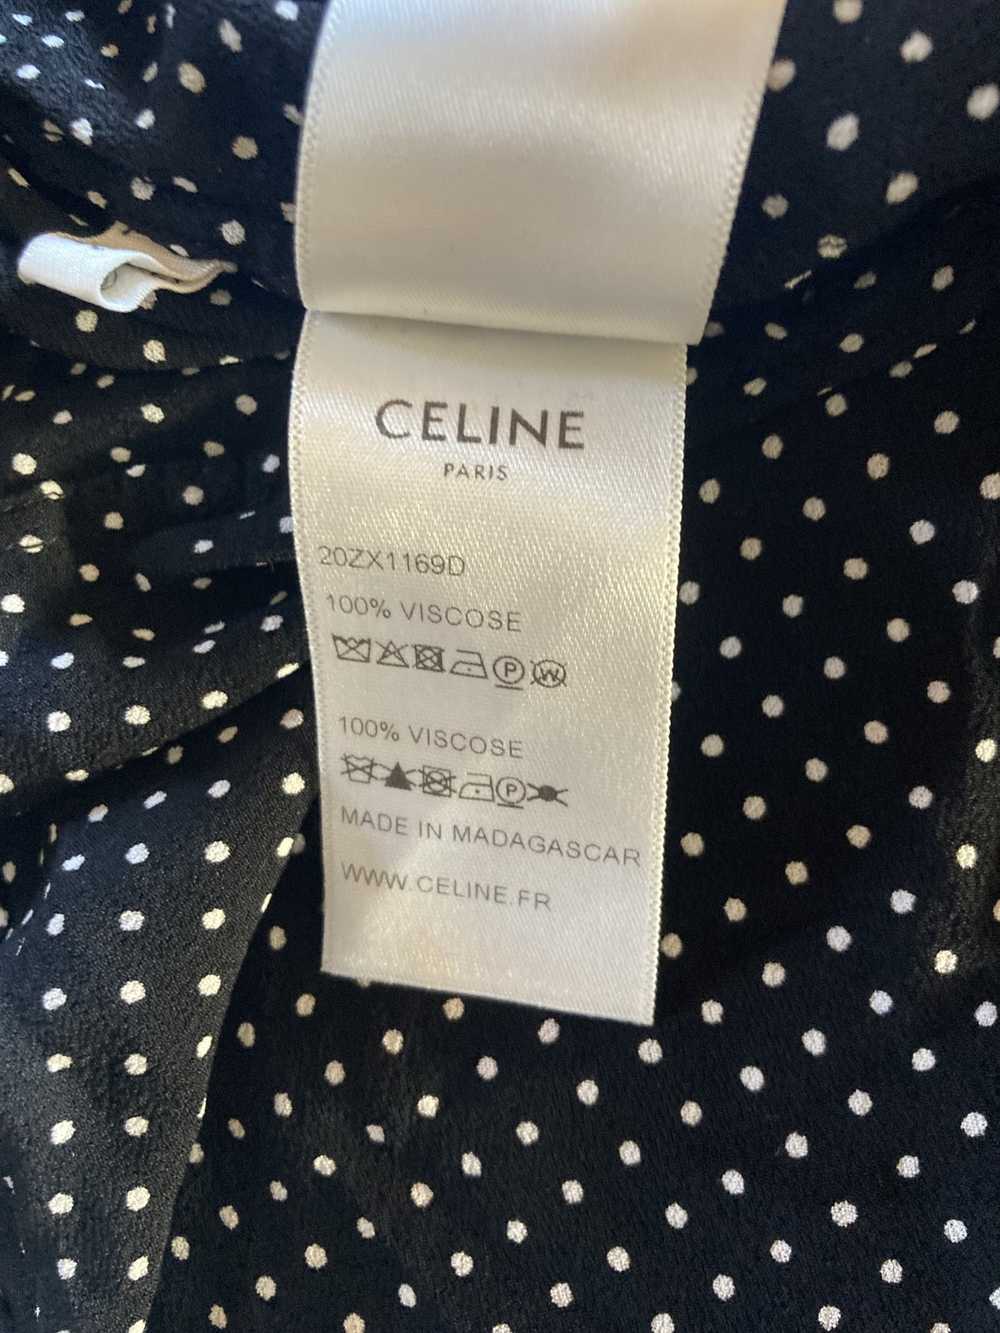 Celine Celine Hedi Slimane Polka Dot Viscose Shirt - image 8